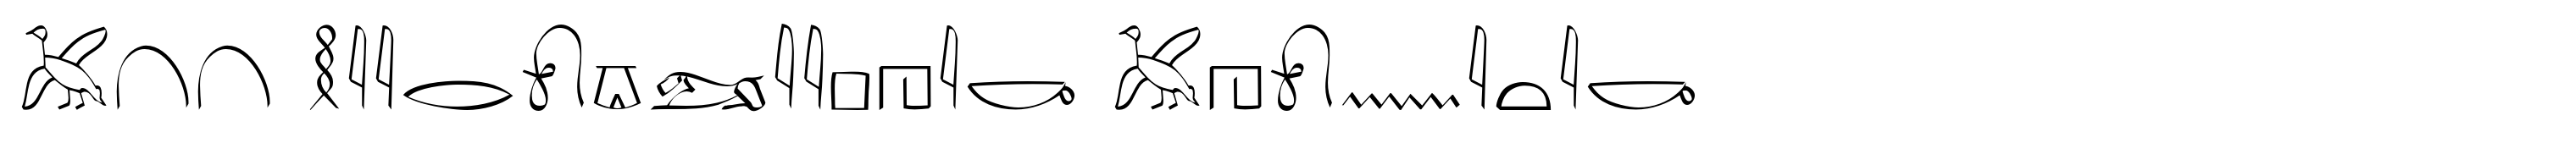 P22 Hieroglyphic Phonetic